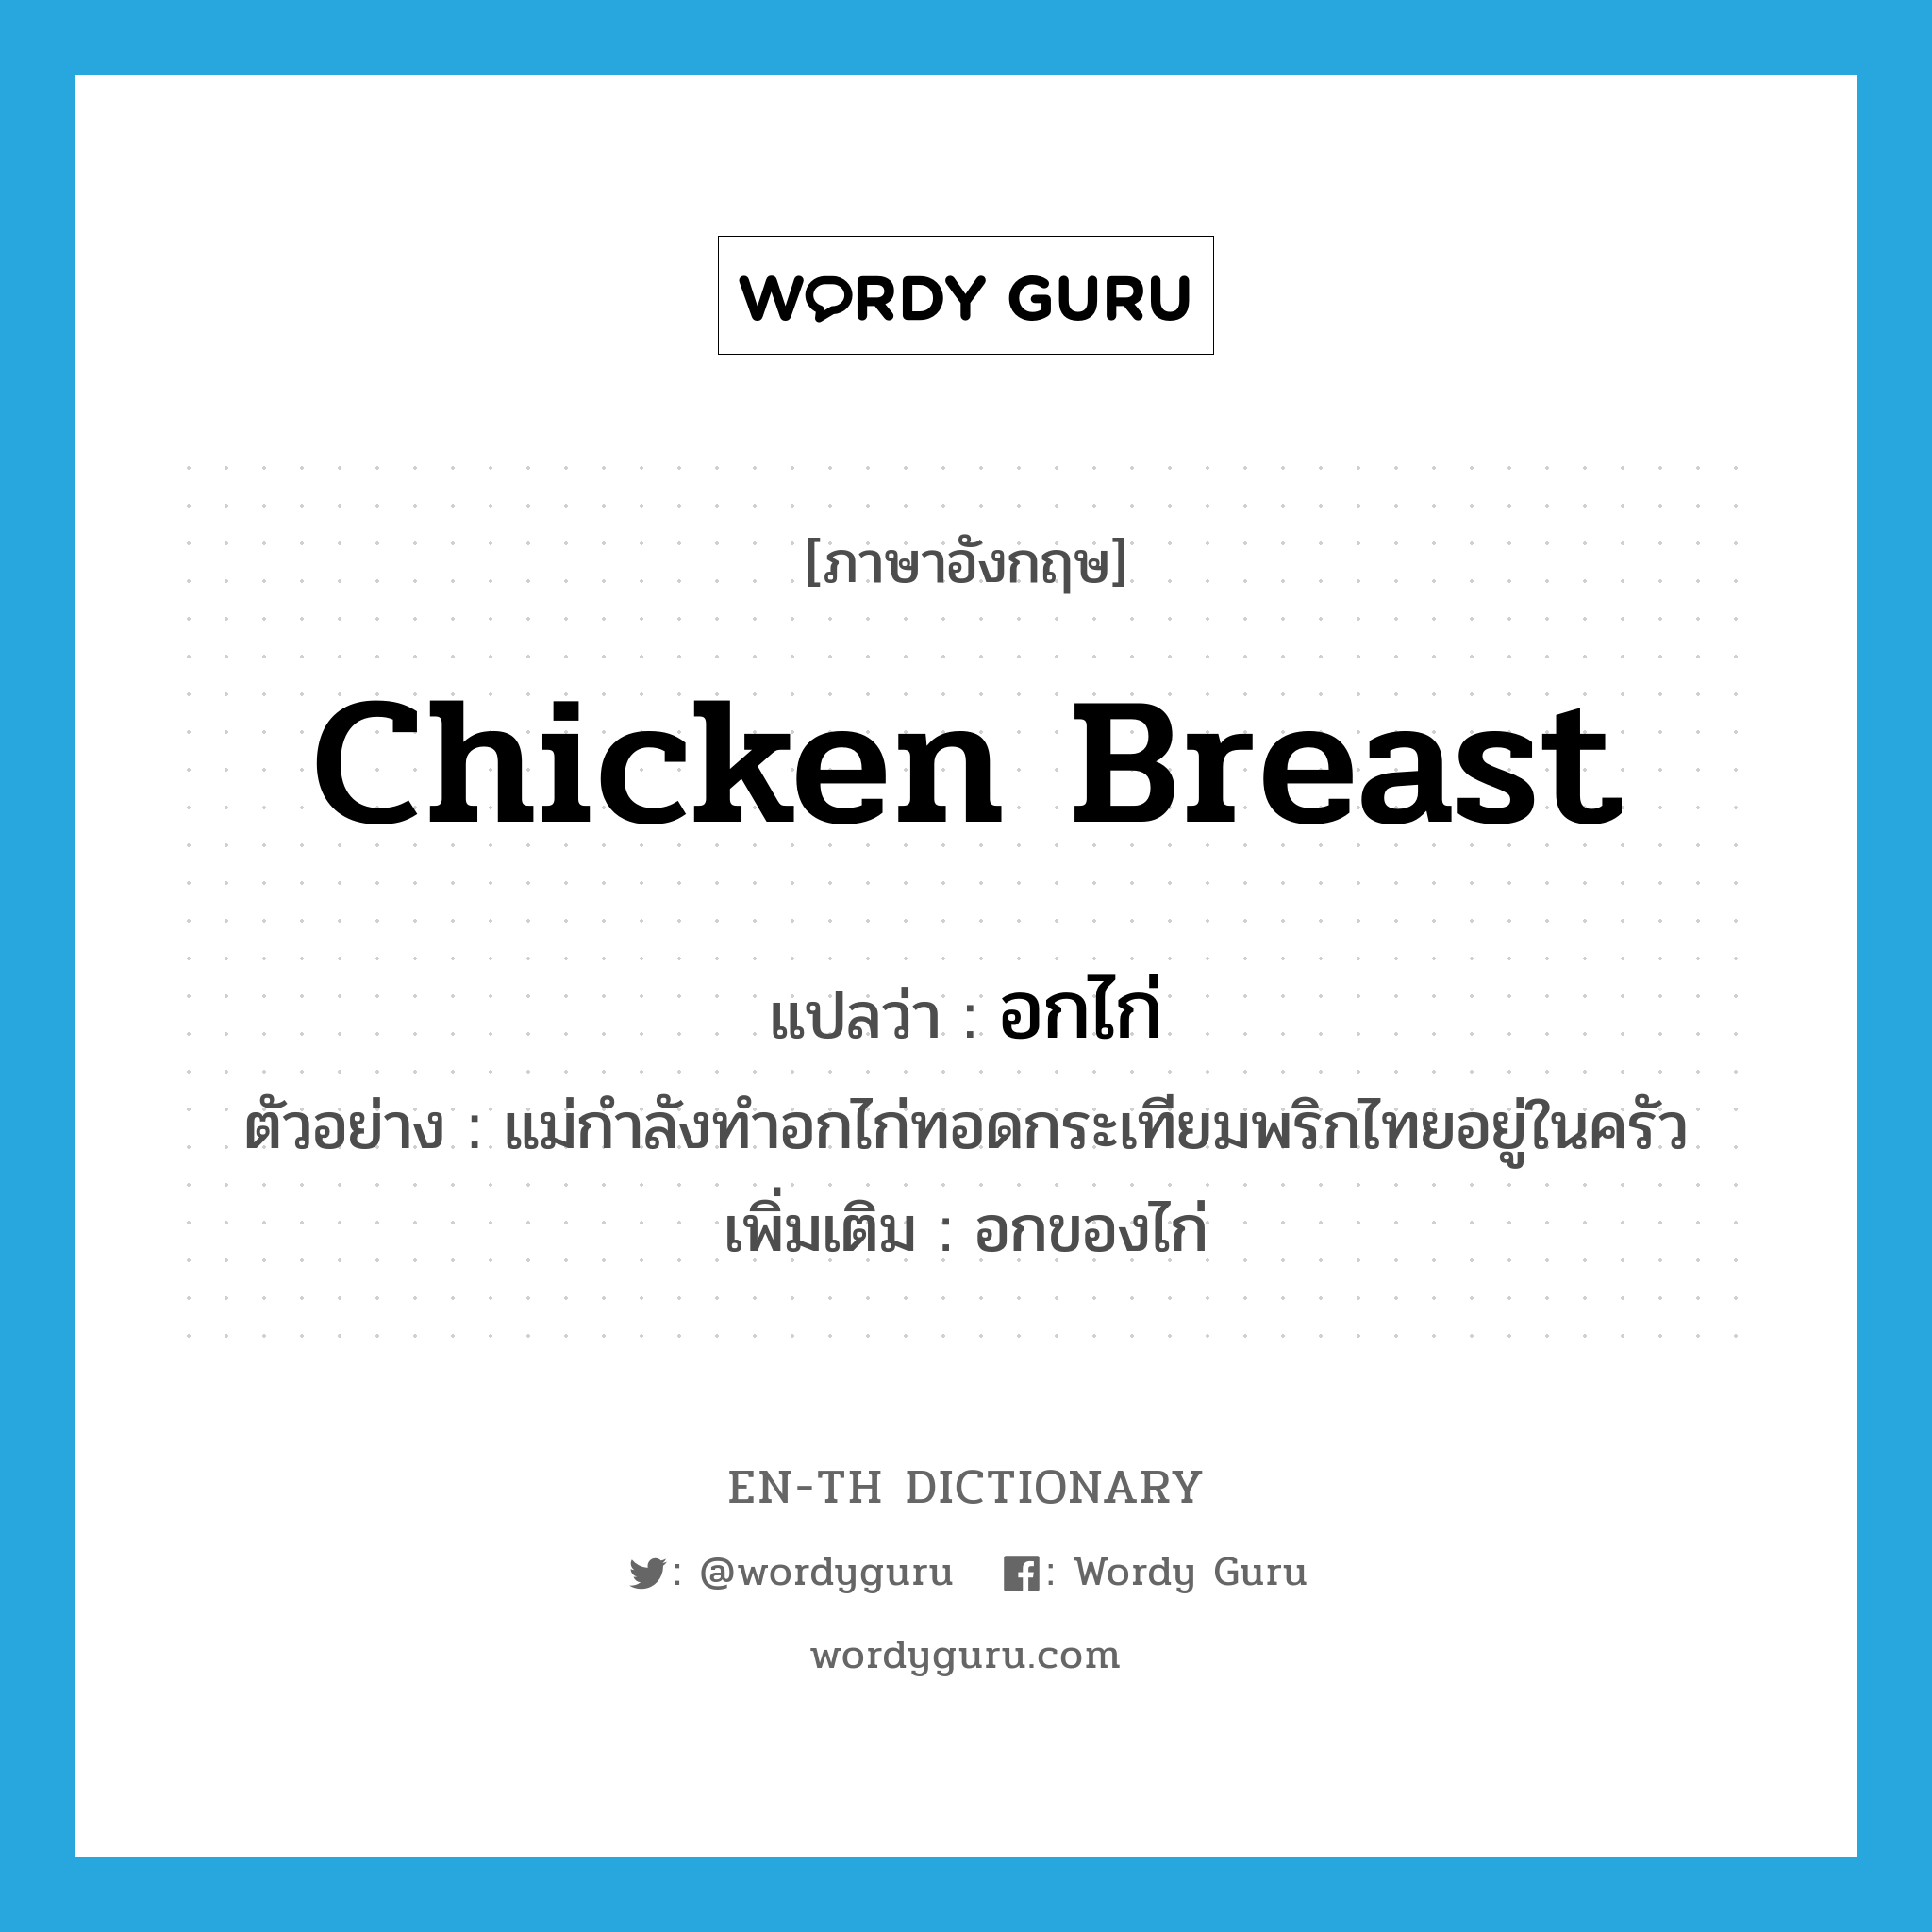 chicken breast แปลว่า?, คำศัพท์ภาษาอังกฤษ chicken breast แปลว่า อกไก่ ประเภท N ตัวอย่าง แม่กำลังทำอกไก่ทอดกระเทียมพริกไทยอยู่ในครัว เพิ่มเติม อกของไก่ หมวด N